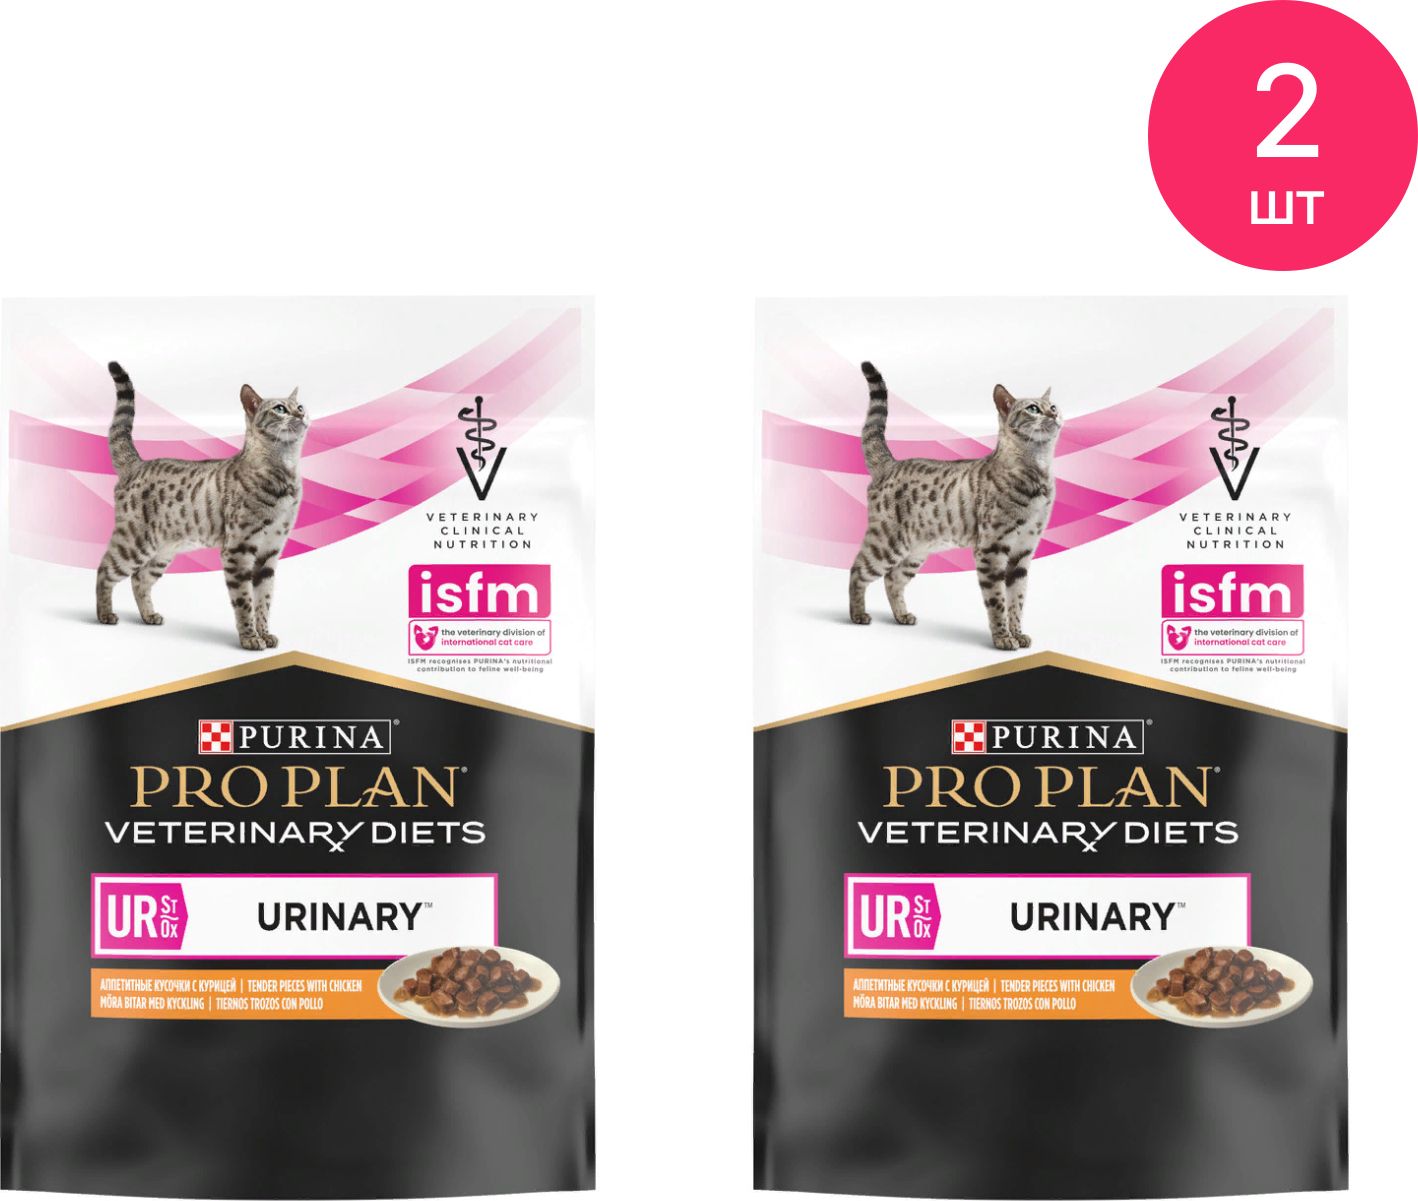 Pro plan veterinary urinary для кошек. Pro Plan Veterinary Diets ur.